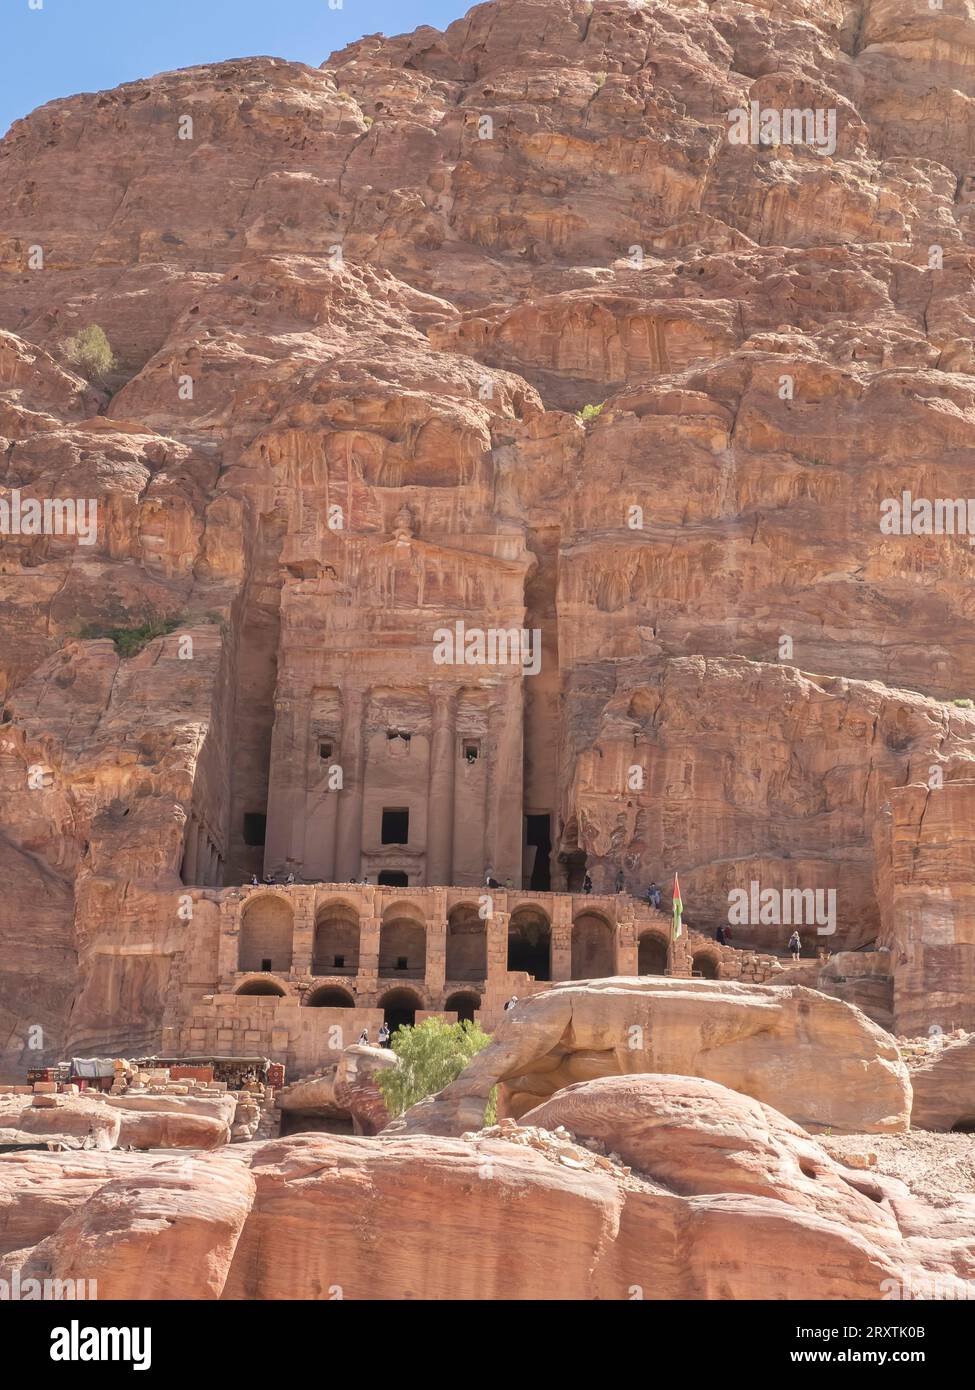 La tomba dell'urna, il parco archeologico di Petra, patrimonio dell'umanità dell'UNESCO, una delle nuove sette meraviglie del mondo, Petra, Giordania, Medio Oriente Foto Stock